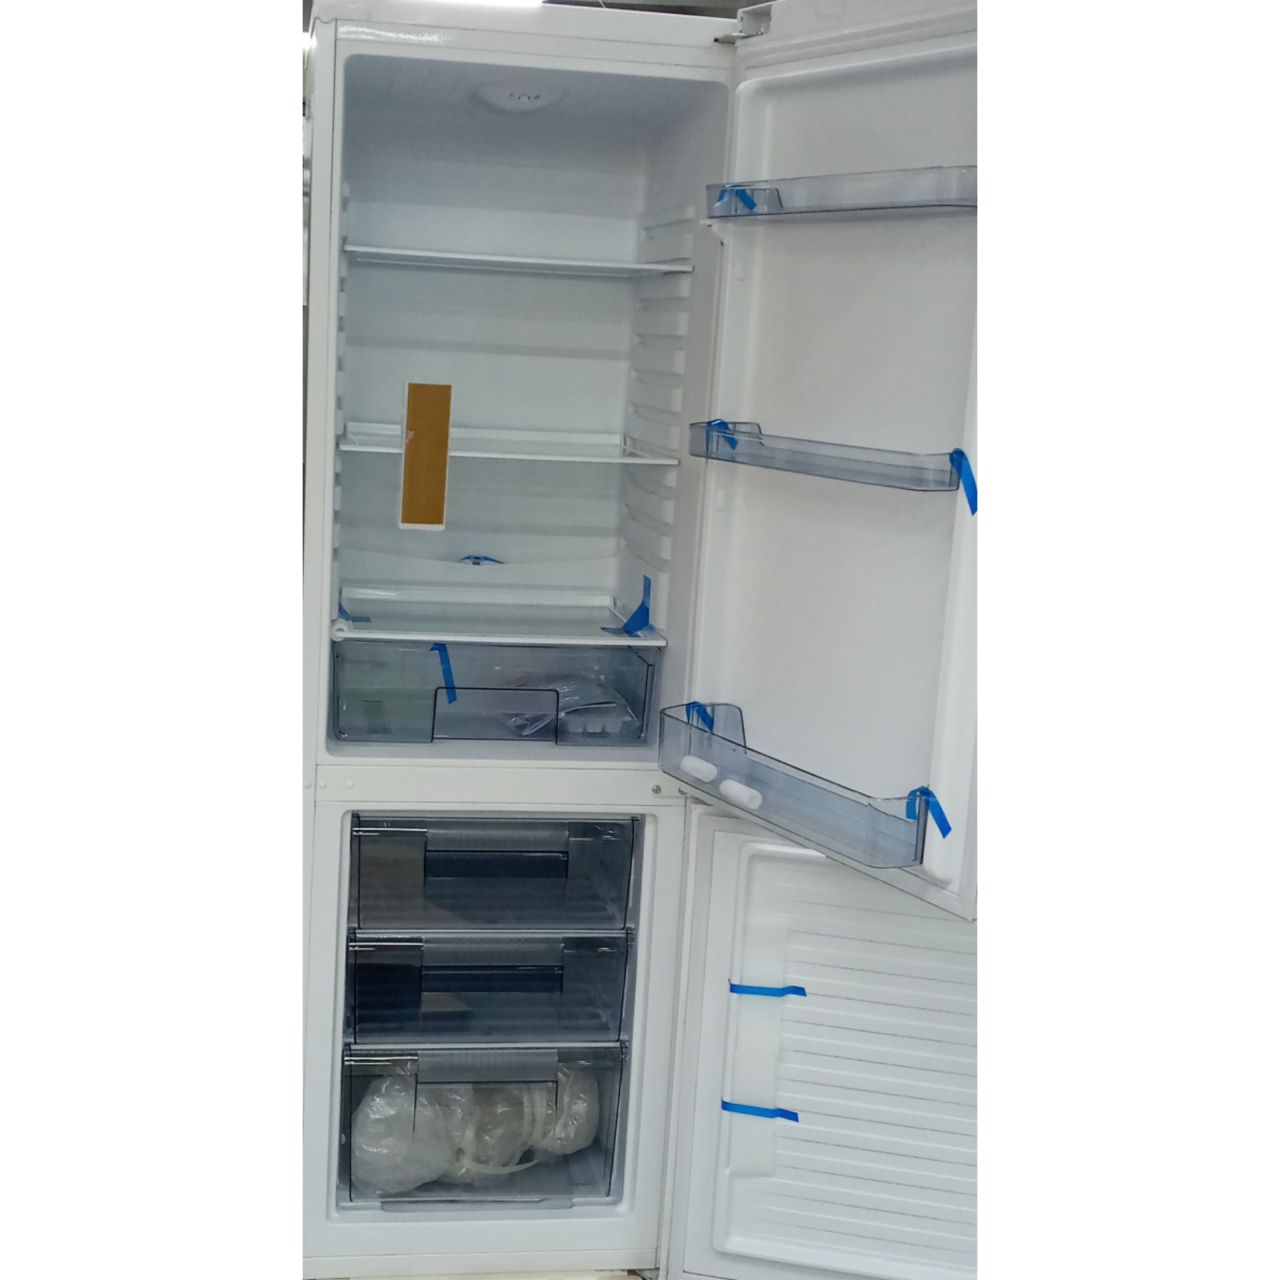 Холодильник двухкамерный Avest 290 литров